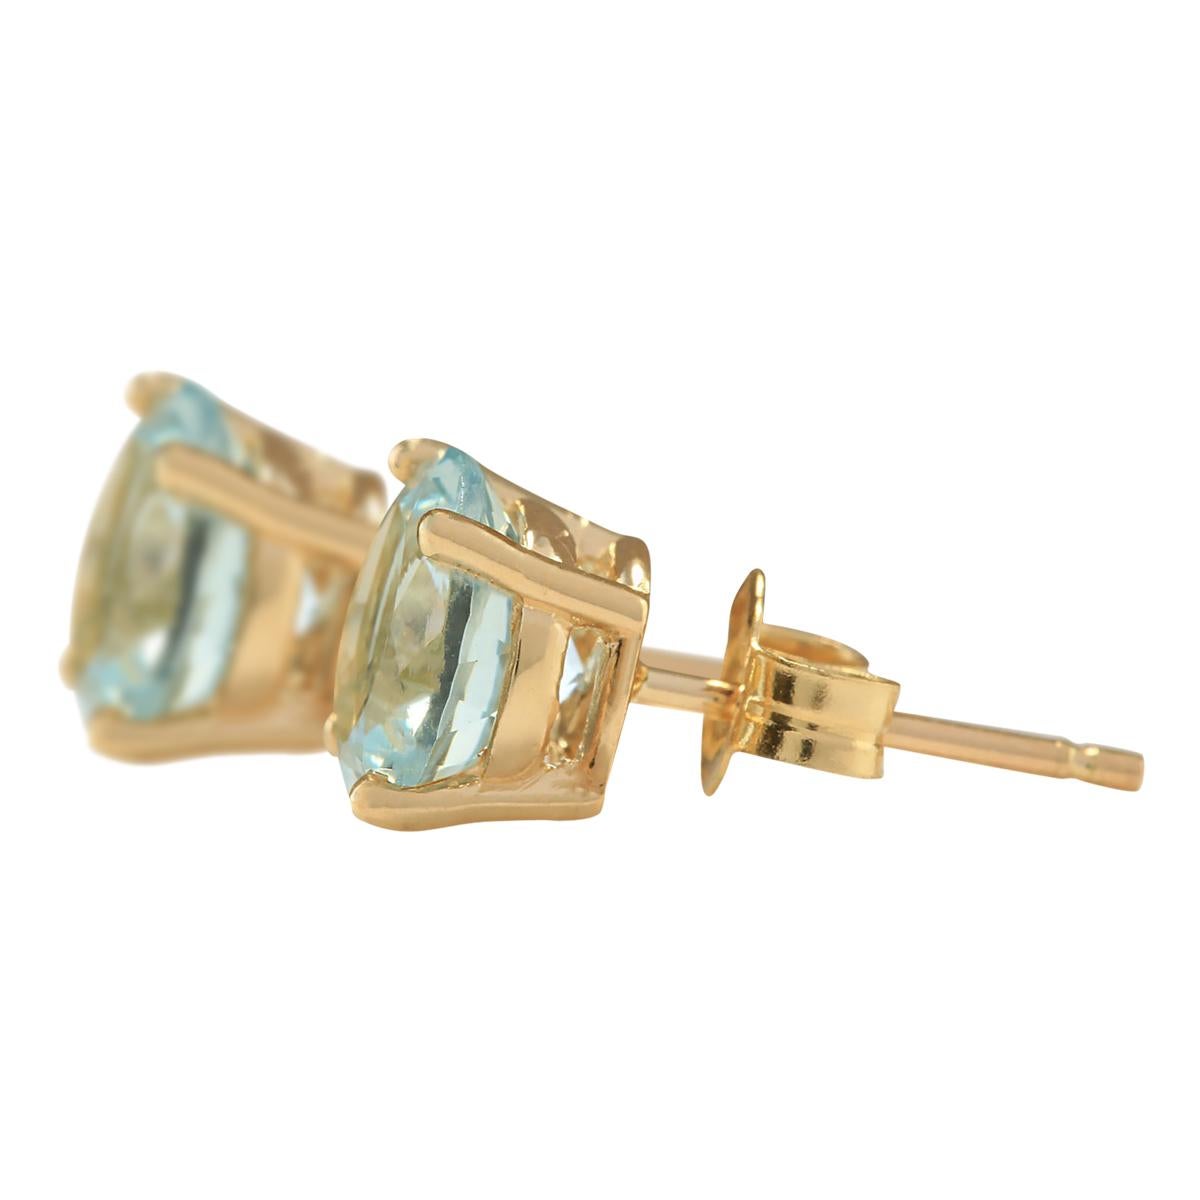 Wir stellen unsere exquisiten 3,00 Karat natürlichen Aquamarin-Ohrringe vor, die in 14-karätigem Gelbgold gefertigt sind. Jeder Ohrring trägt den authentischen 14-Karat-Stempel und wiegt insgesamt 1,2 Gramm, was sowohl Eleganz als auch Komfort